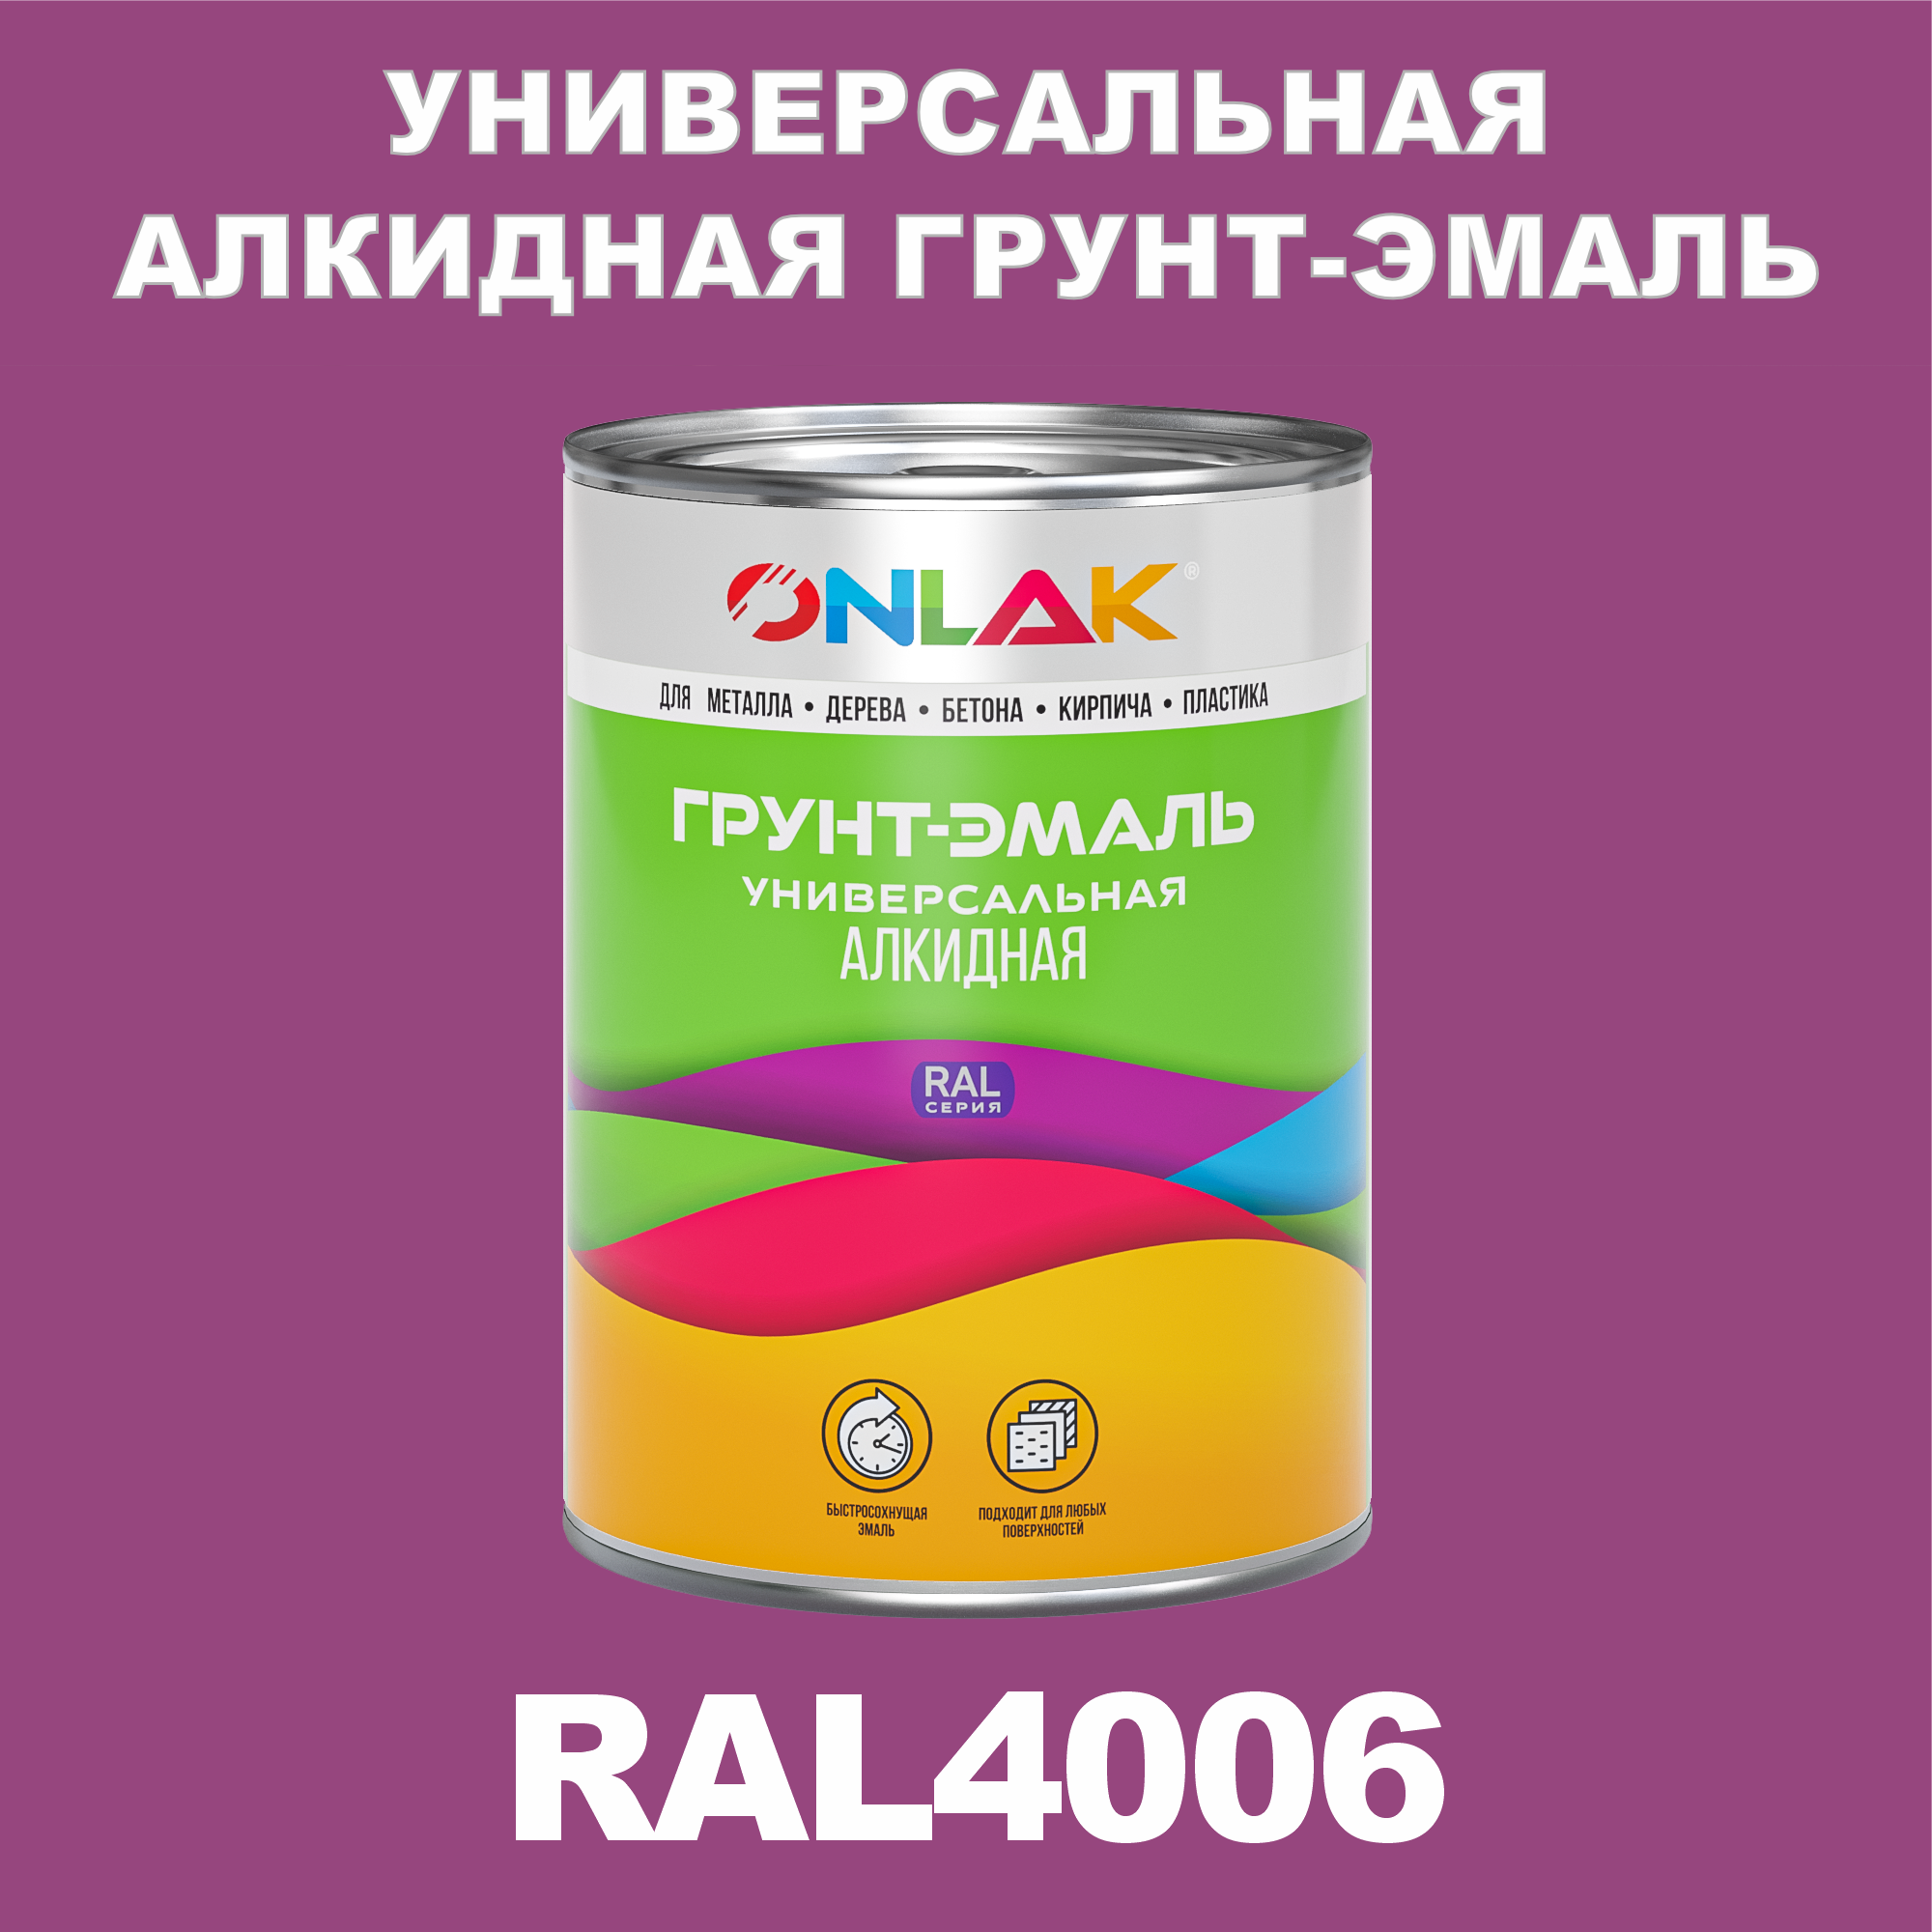 Грунт-эмаль ONLAK 1К RAL4006 антикоррозионная алкидная по металлу по ржавчине 1 кг антикоррозионная грунт эмаль onlak ral 4007 фиолетовый 572 мл